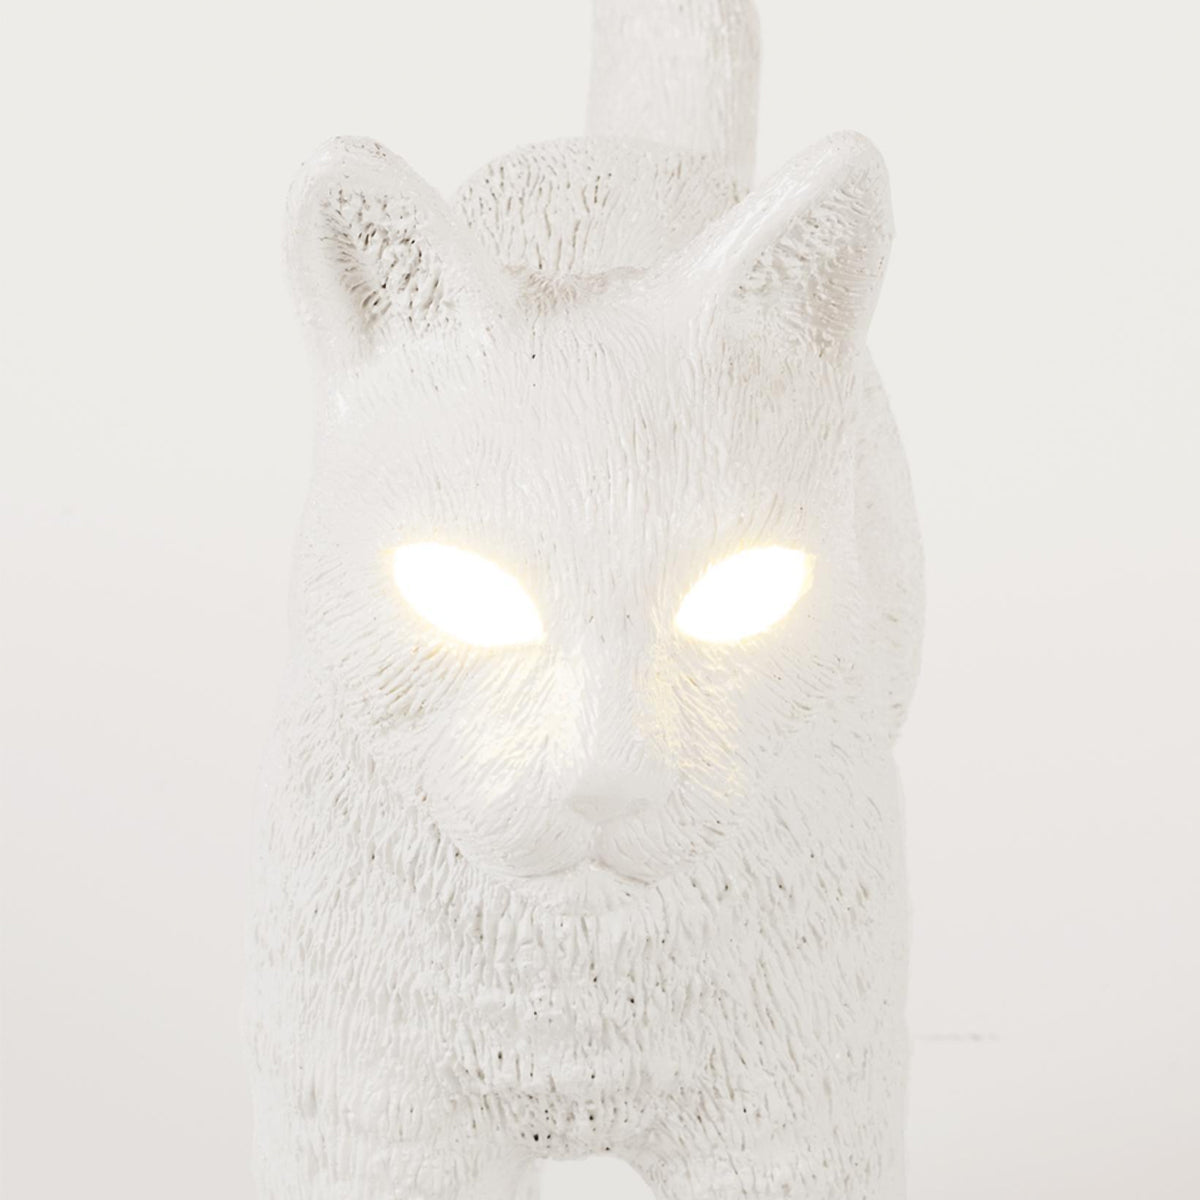 Seletti X Studio Job - Jobby The Cat Lamp